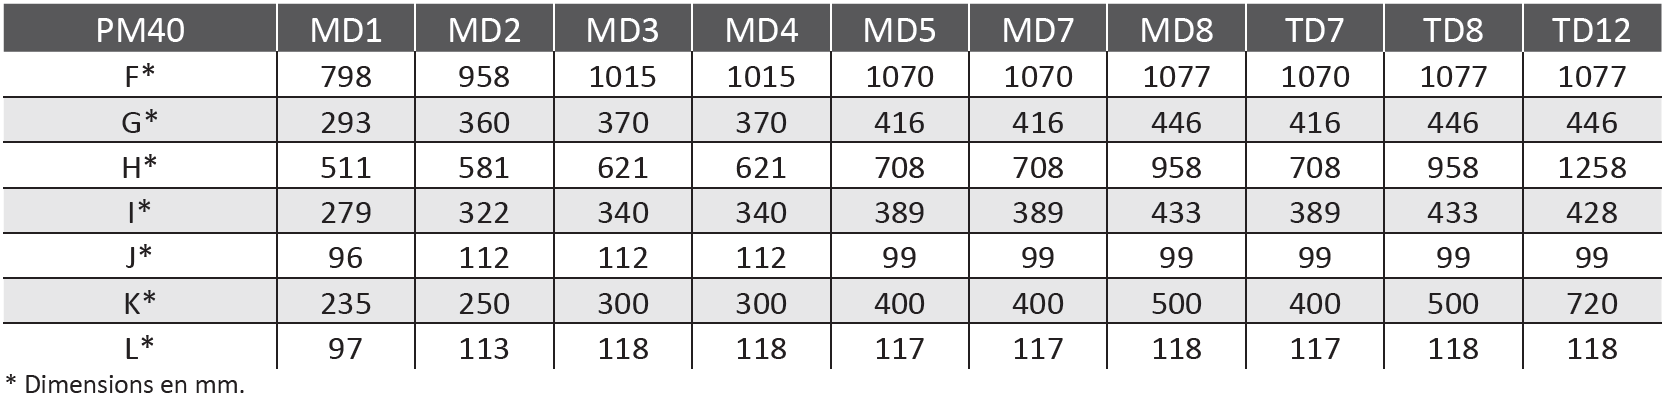 Tableau de l'ensemble des dimensions de la PAC PM40